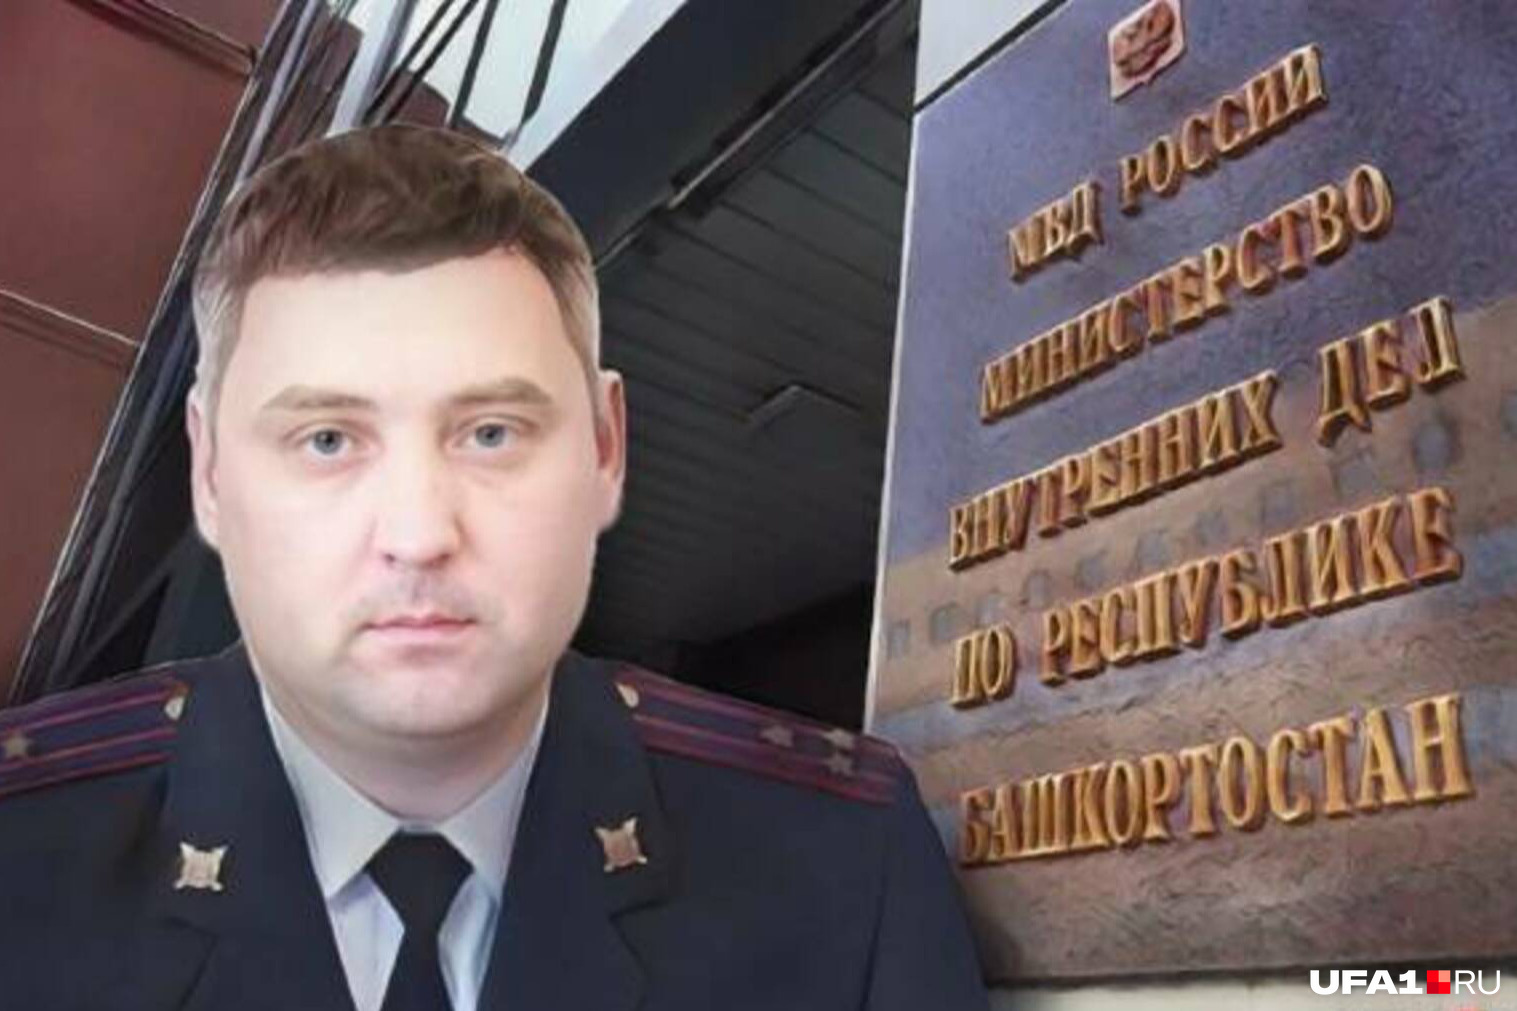 Работавший с Москвитиным в Забайкалье экс-полицейский считает, что дело против него сфабриковано